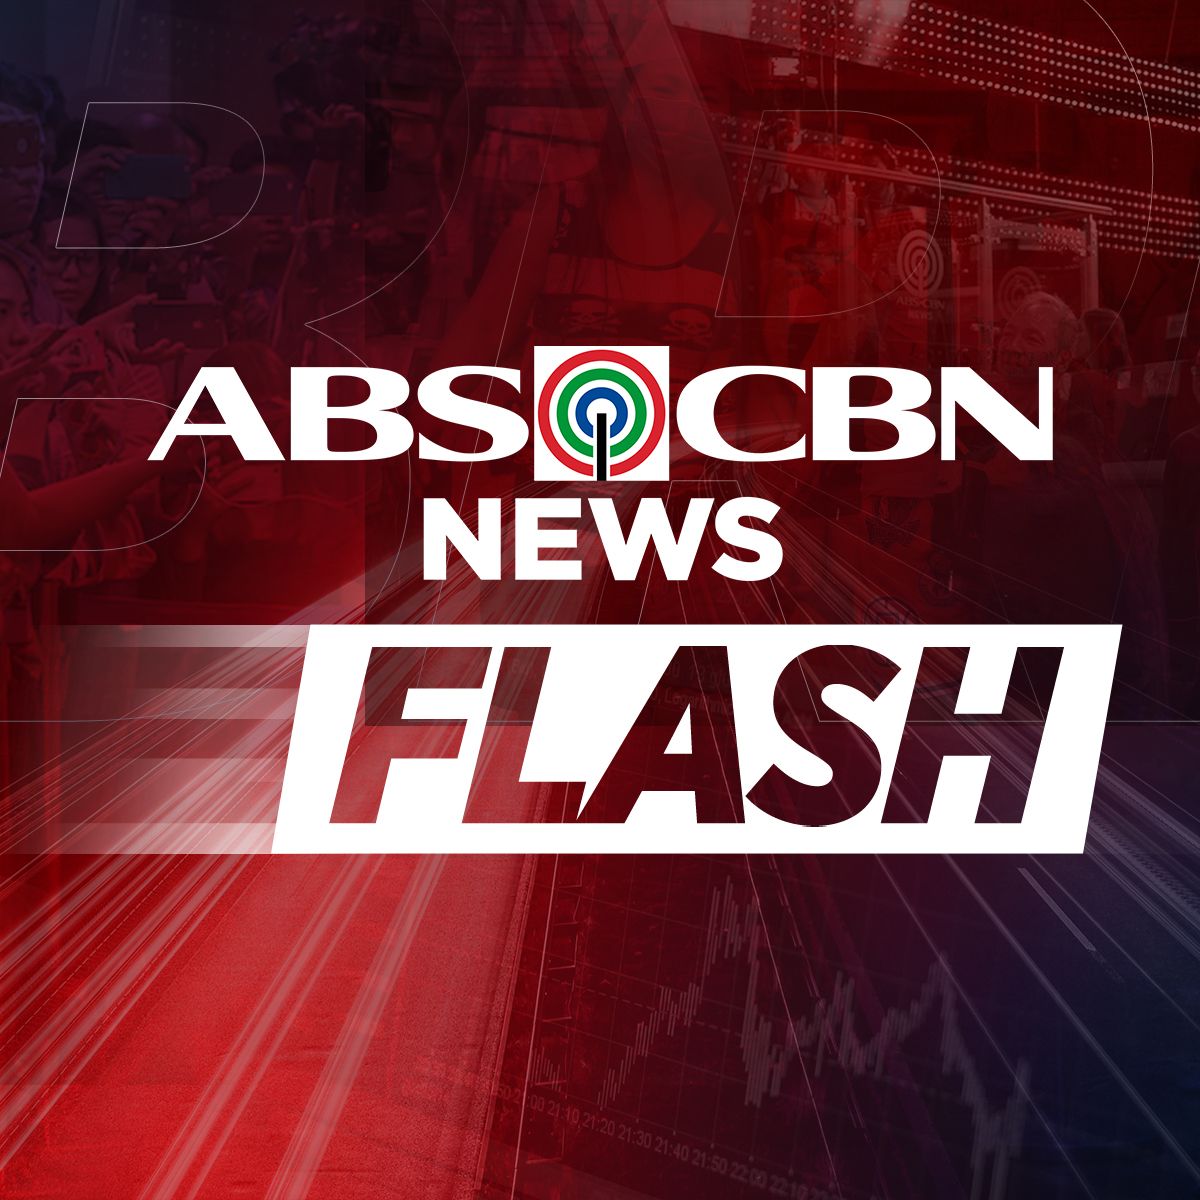 ABS CBN News Flash